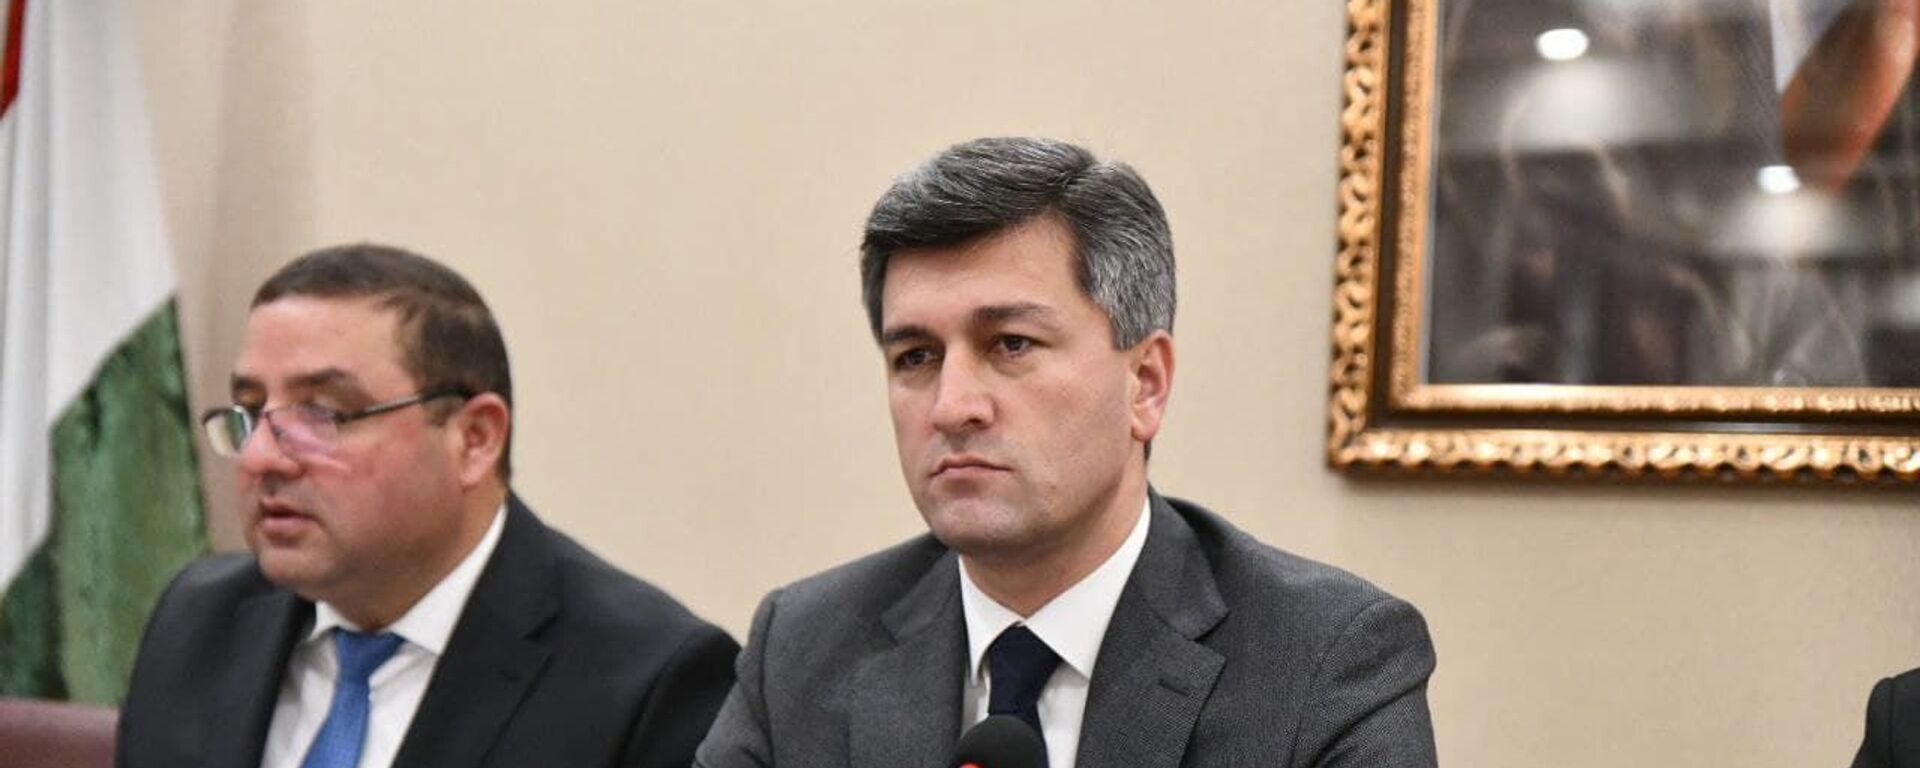 Директор Агентства гражданской авиации Таджикистана Икром Субхонзода - Sputnik Таджикистан, 1920, 26.05.2021